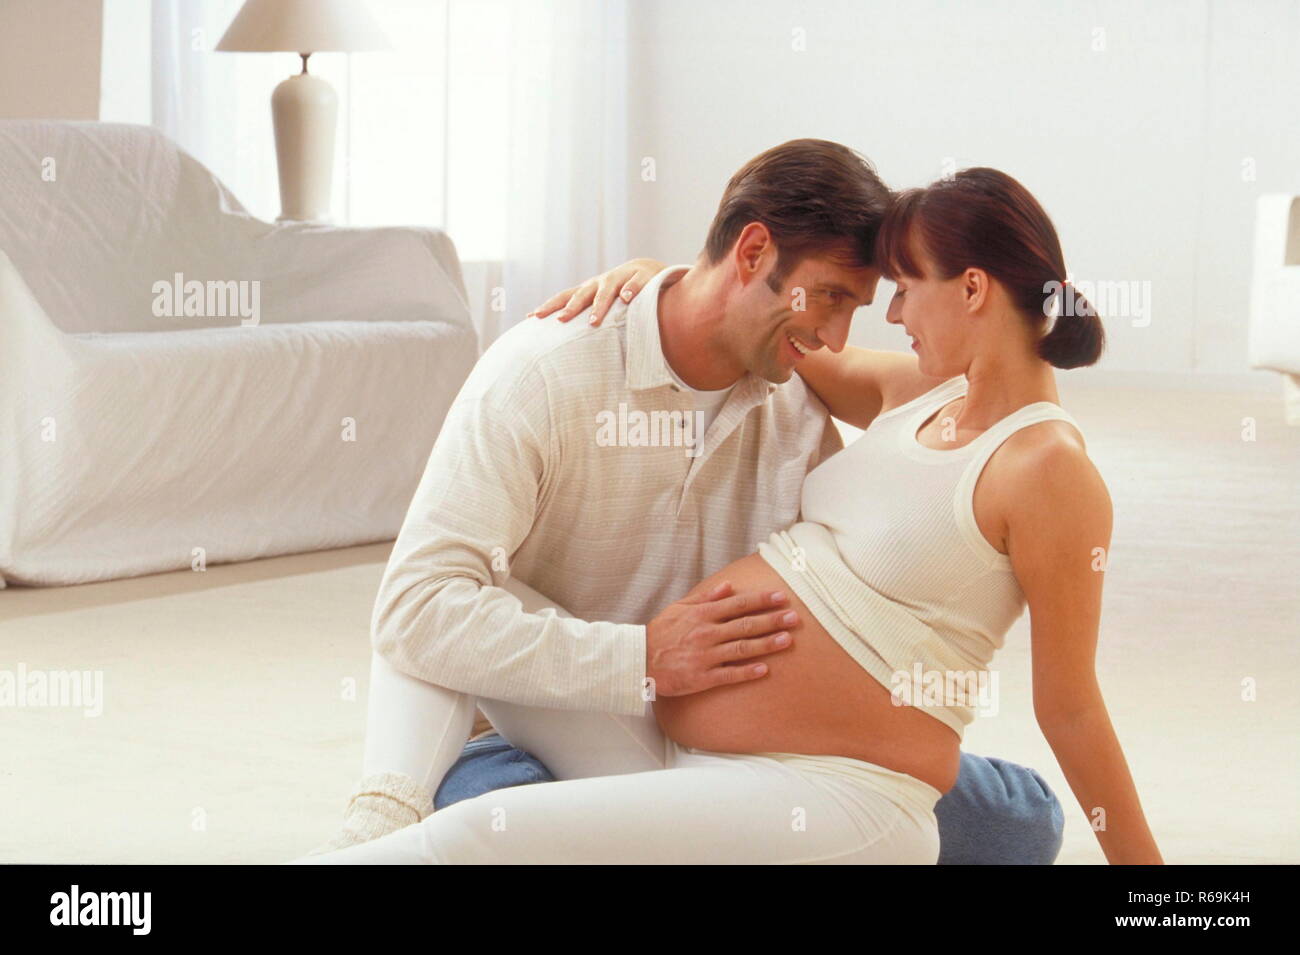 Portrait, Ehepaar sitzt im Wohnzimmer auf dem Teppichboden, der Mann streichelt den nackten Bauch seiner hochschwangeren Frau und fuehlt die Bewegungen seines Kindes Stock Photo